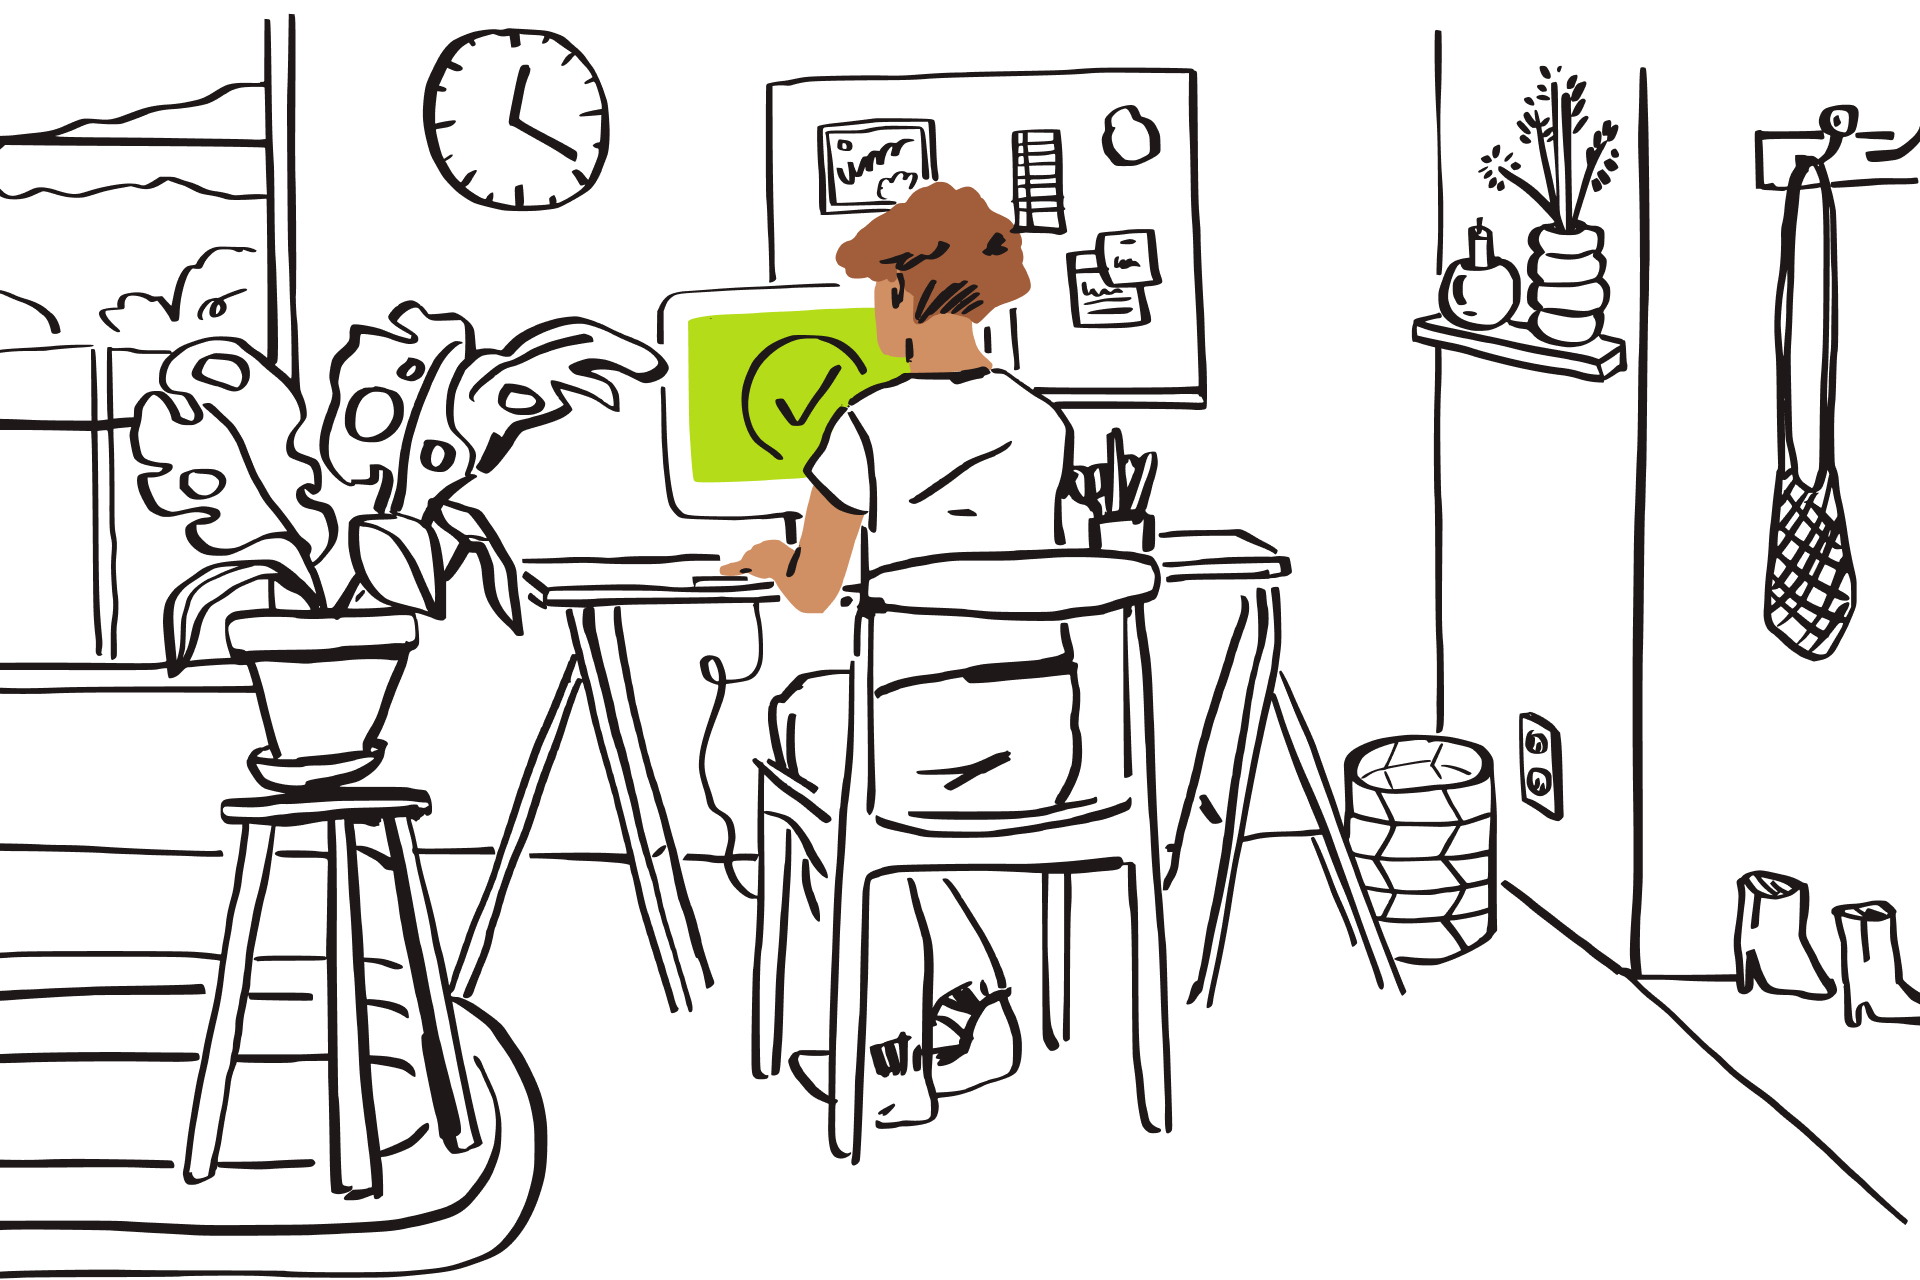 Ilustracja przedstawiająca szkic osoby siedzącej przy komputerze z zielonym ekranem i symbolem wyboru